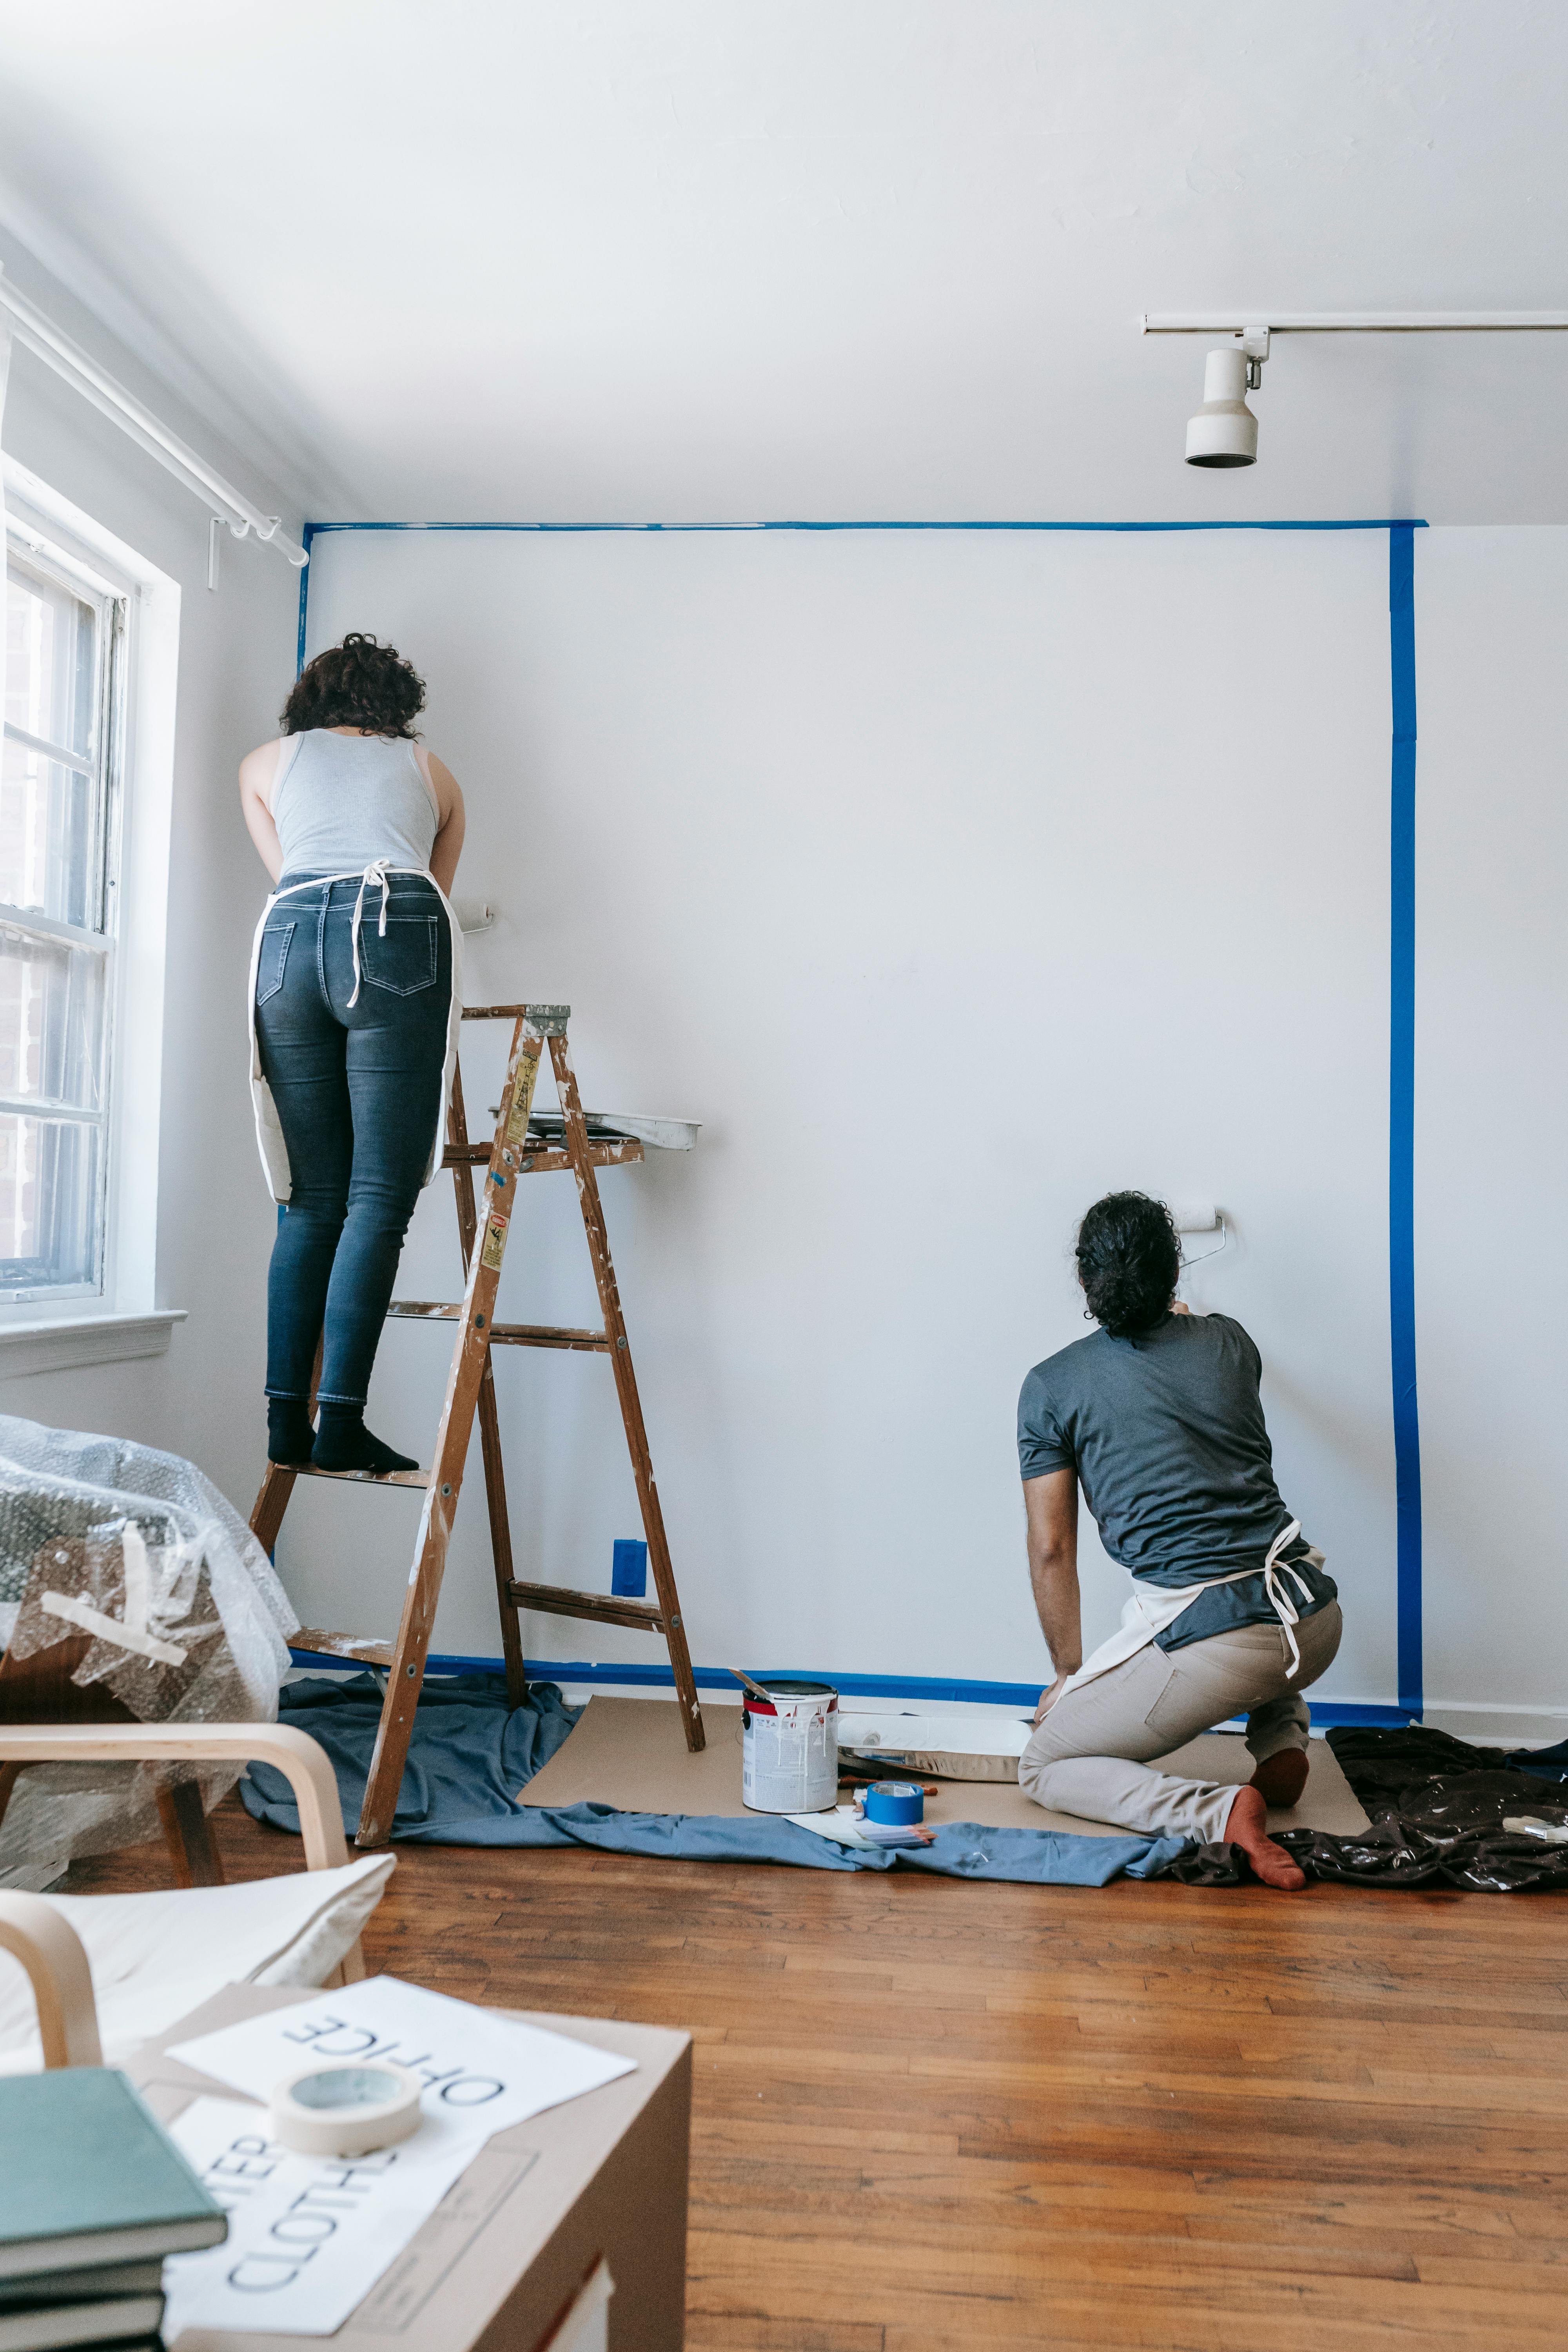 Dos personas pintando una pared. Imagen con fines ilustrativos | Foto: Pexels